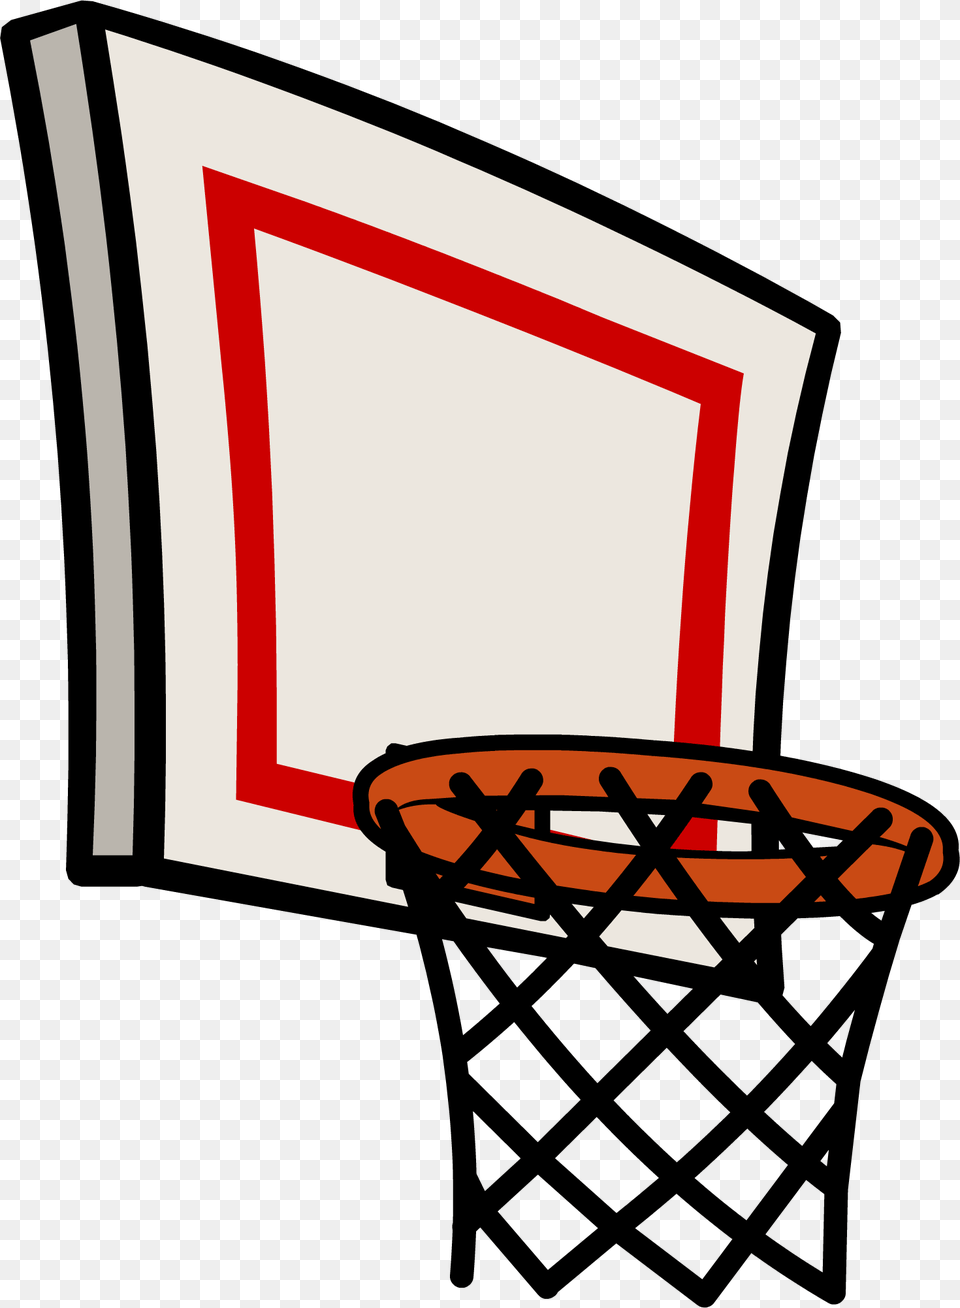 Basketball Net Sprite 001 Clip Art Basketball Hoop Png